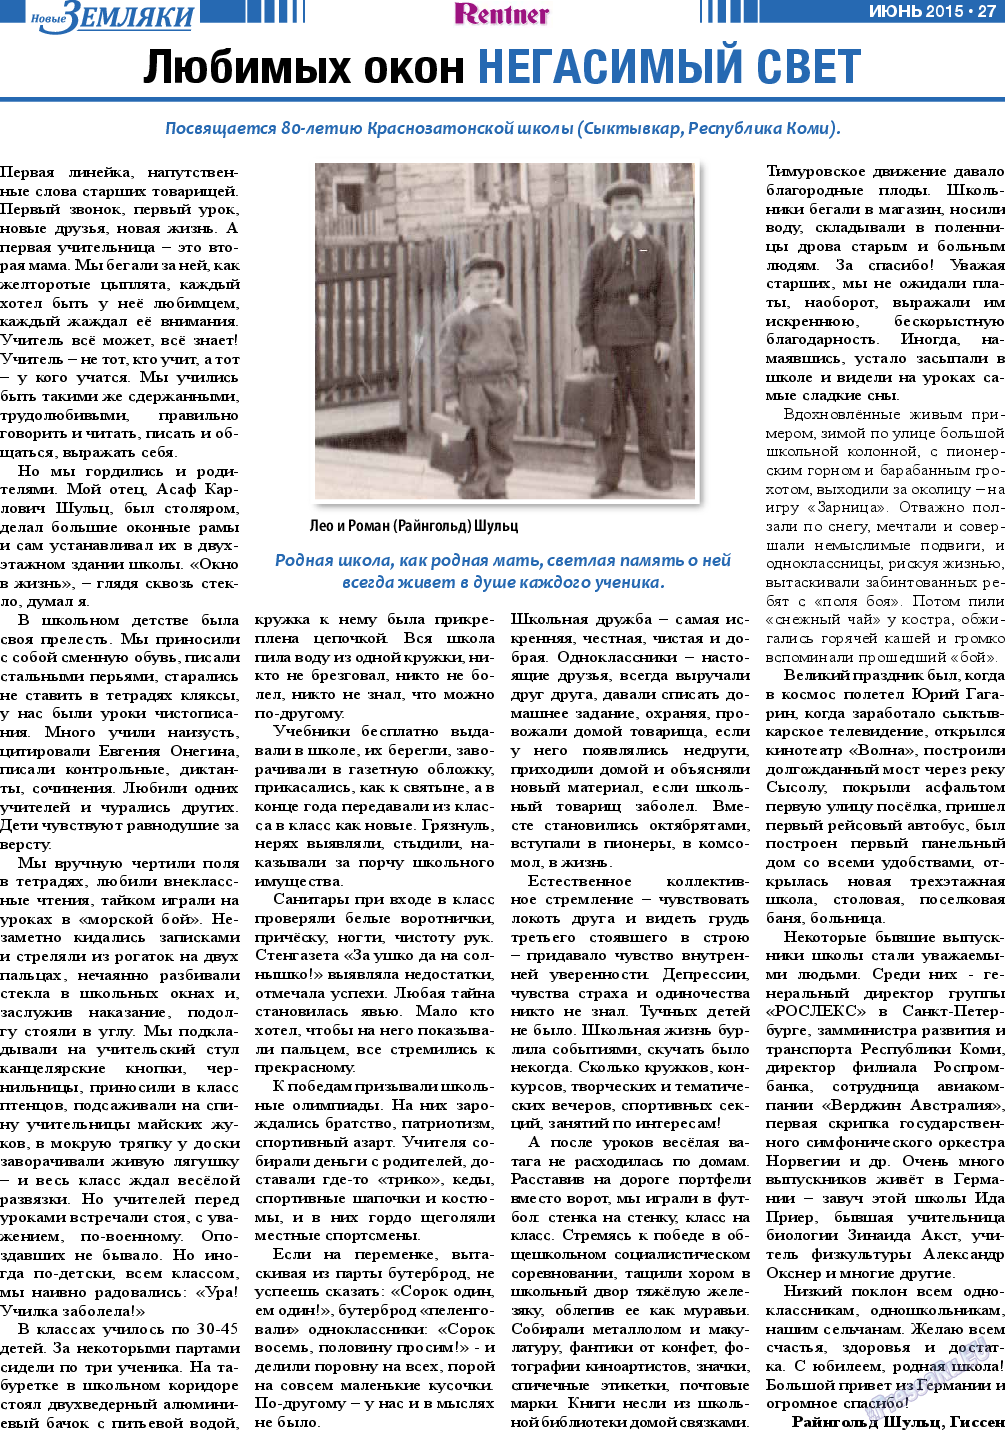 Новые Земляки, газета. 2015 №6 стр.27